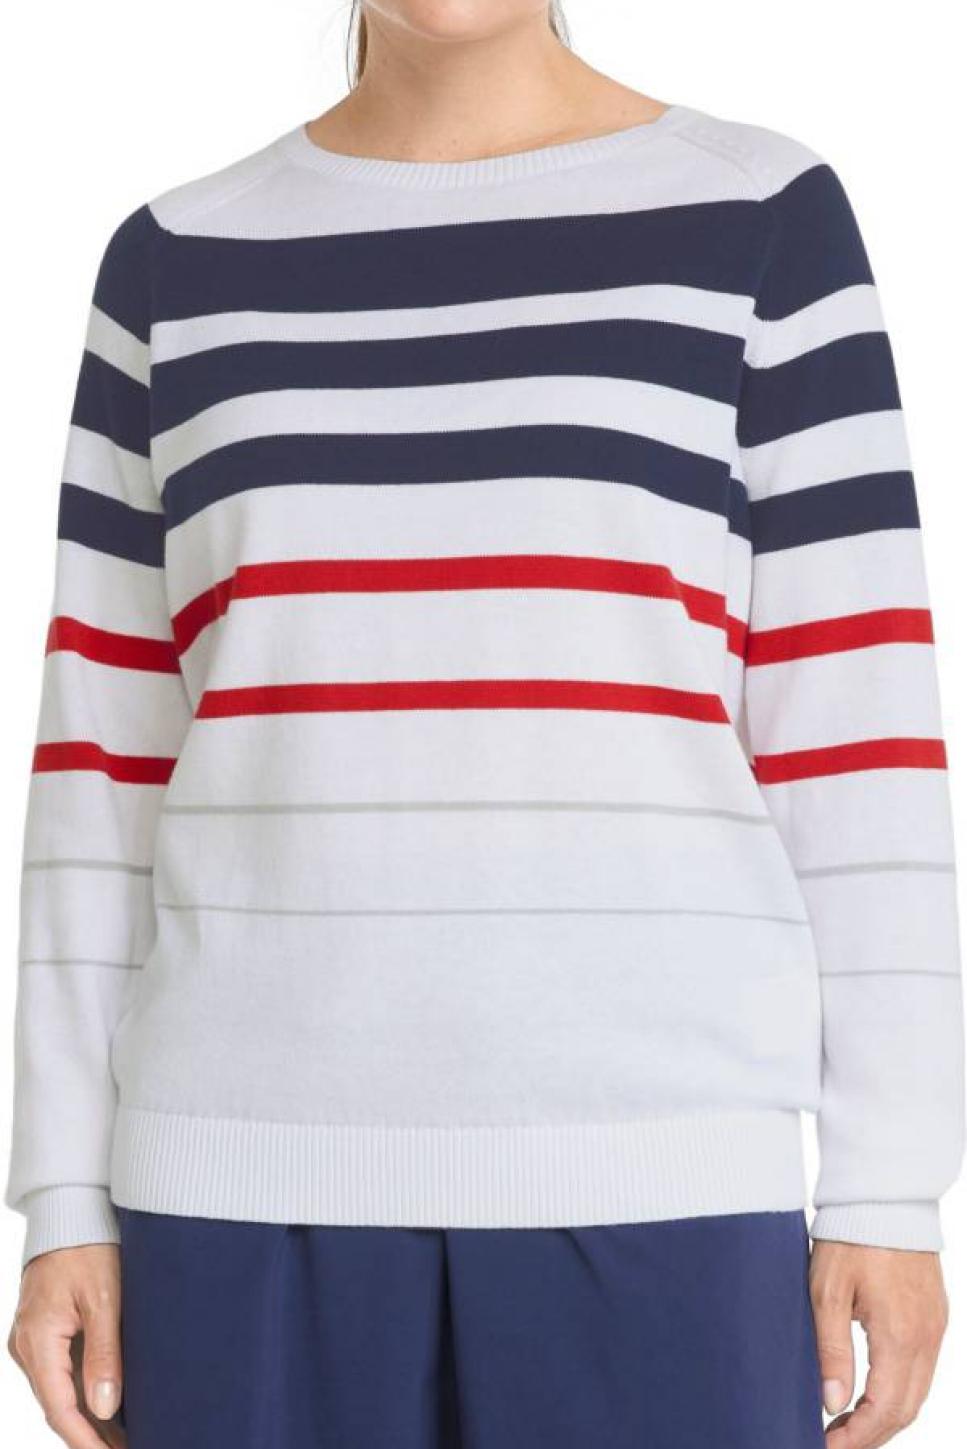 rx-dsgpuma-womens-striped-golf-sweater.jpeg